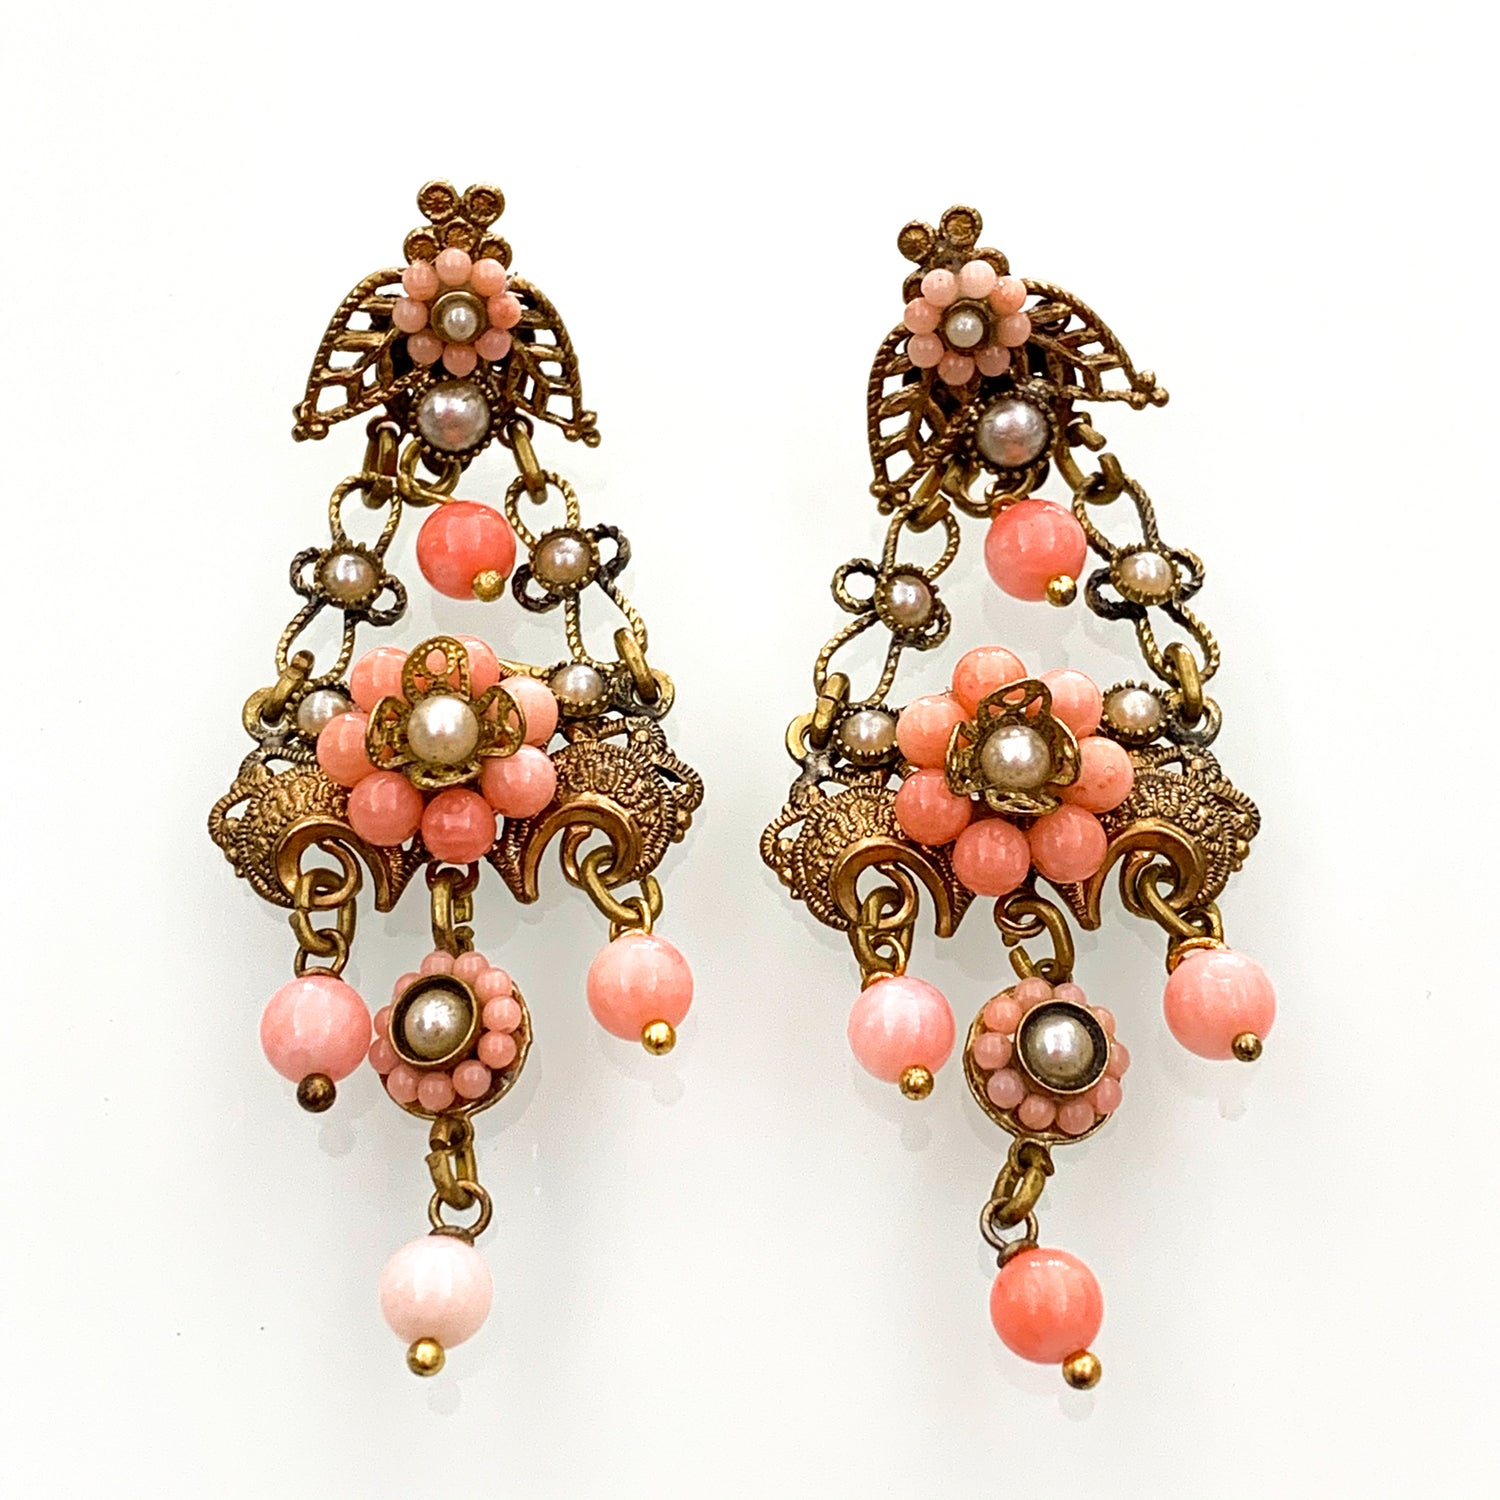 Orecchini pendenti in bijoux con corallo rosa e perline.  Lunghezza totale 7 cm.  Larghezza nella parte più ampia 2,5 cm.  Chiusura con farfalline.  Spedizione gratuita con confezione regalo.